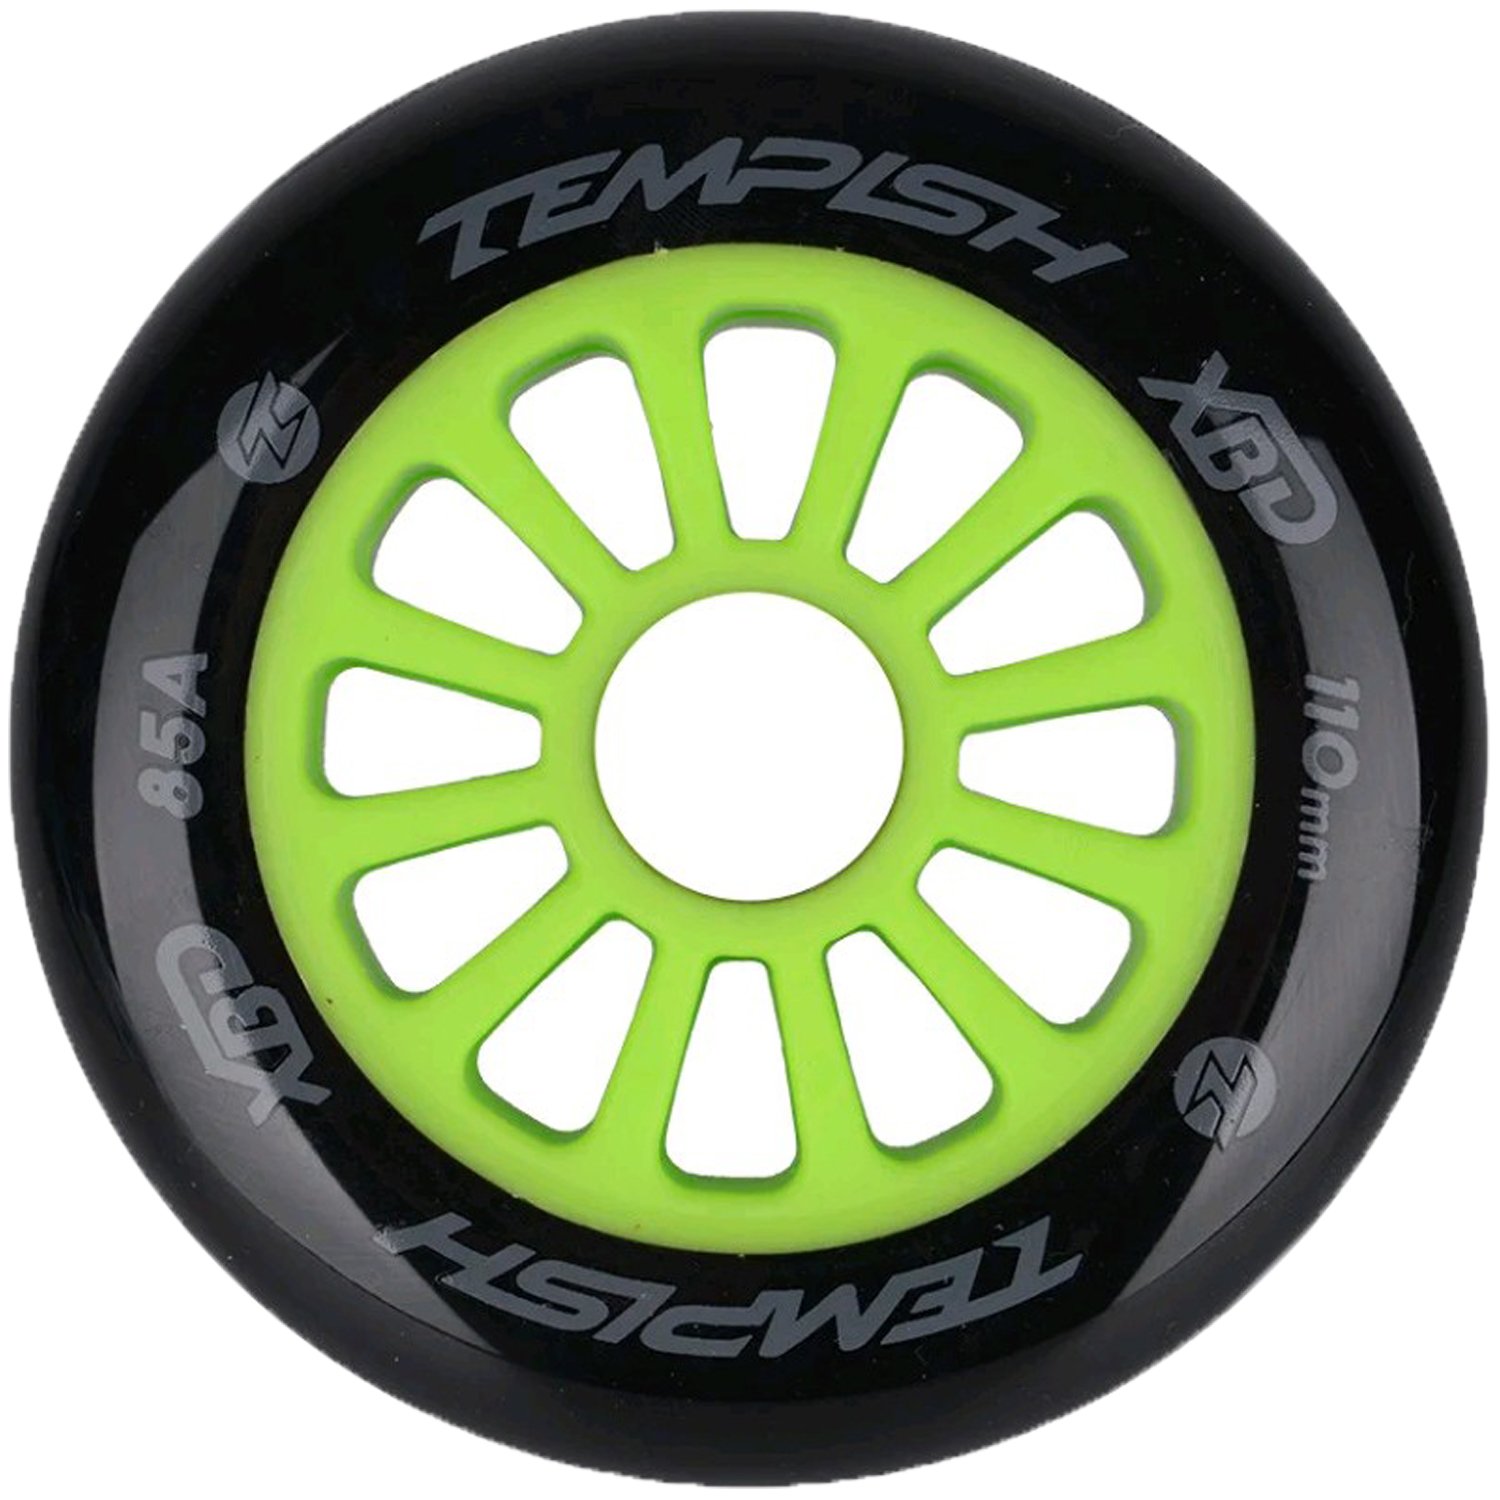 Колесо Tempish PU 85A, для самоката, 110x24 mm, зеленый/черный, 105100026 колесо для самоката tempish pu 85a 110x24 mm grey б р 105100026